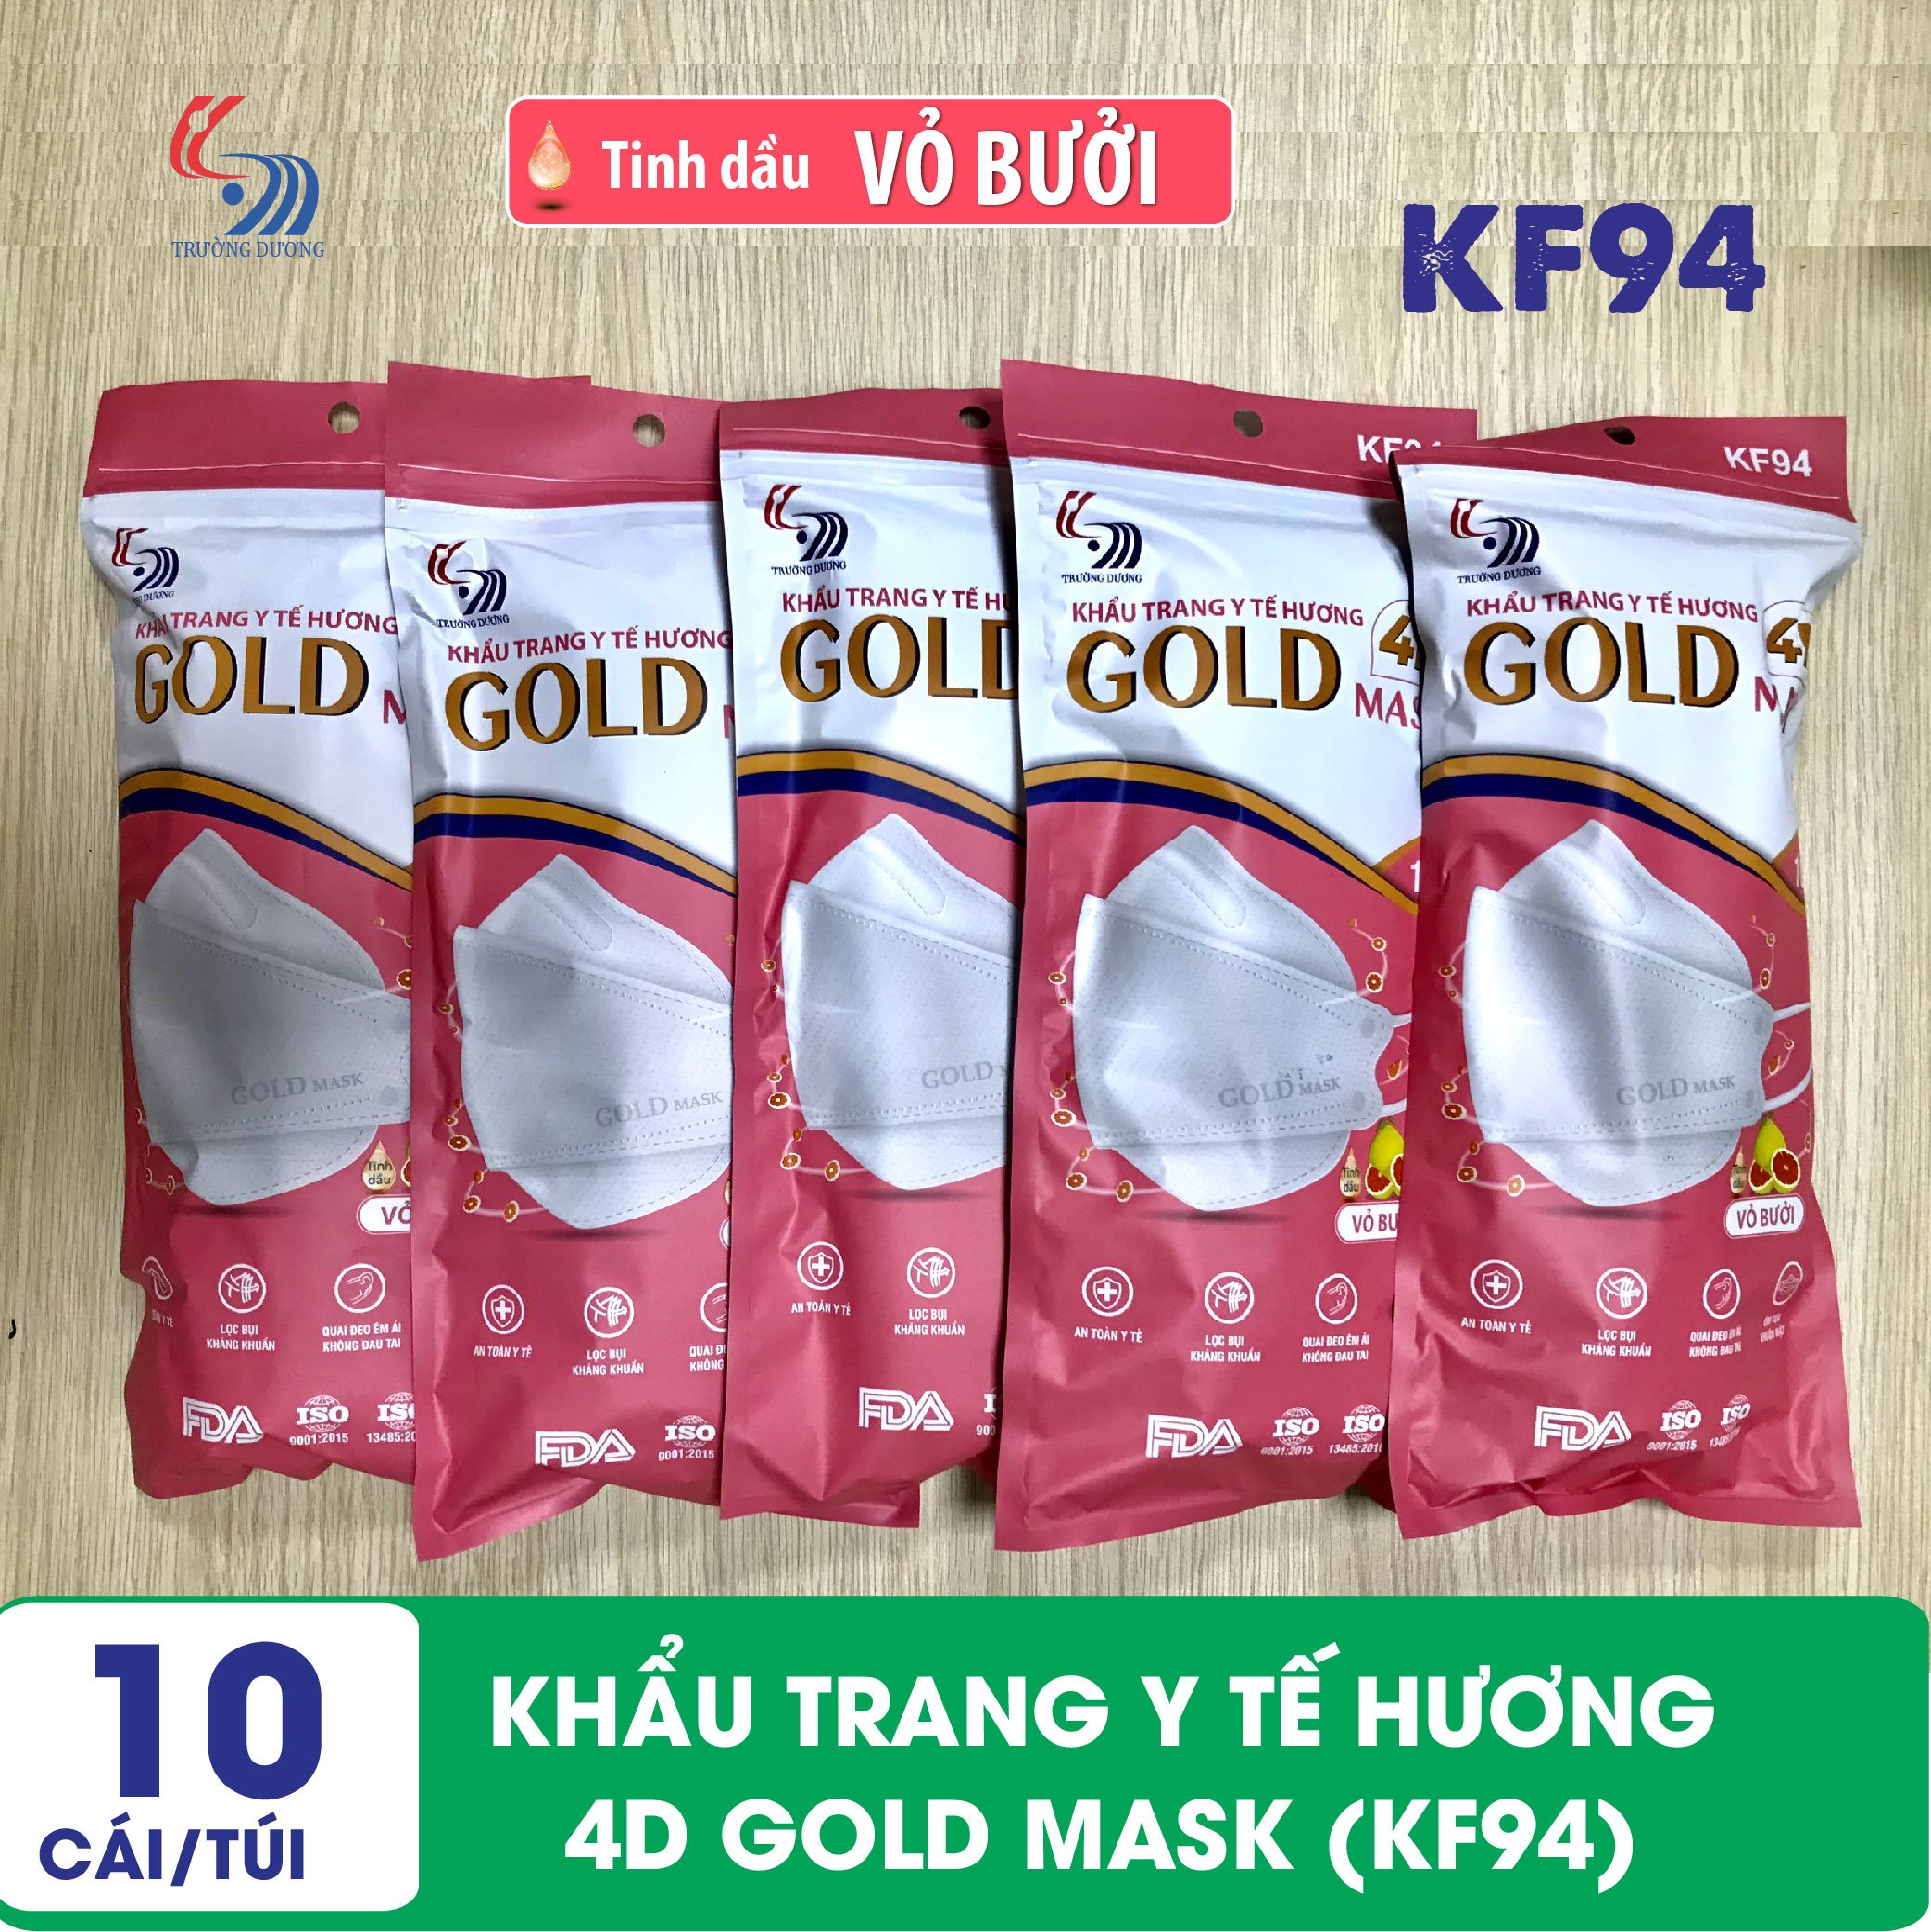 Khẩu trang y tế Hương tinh dầu Vỏ Bưởi 4D Gold Mask (KF94) - Túi 10 chiếc